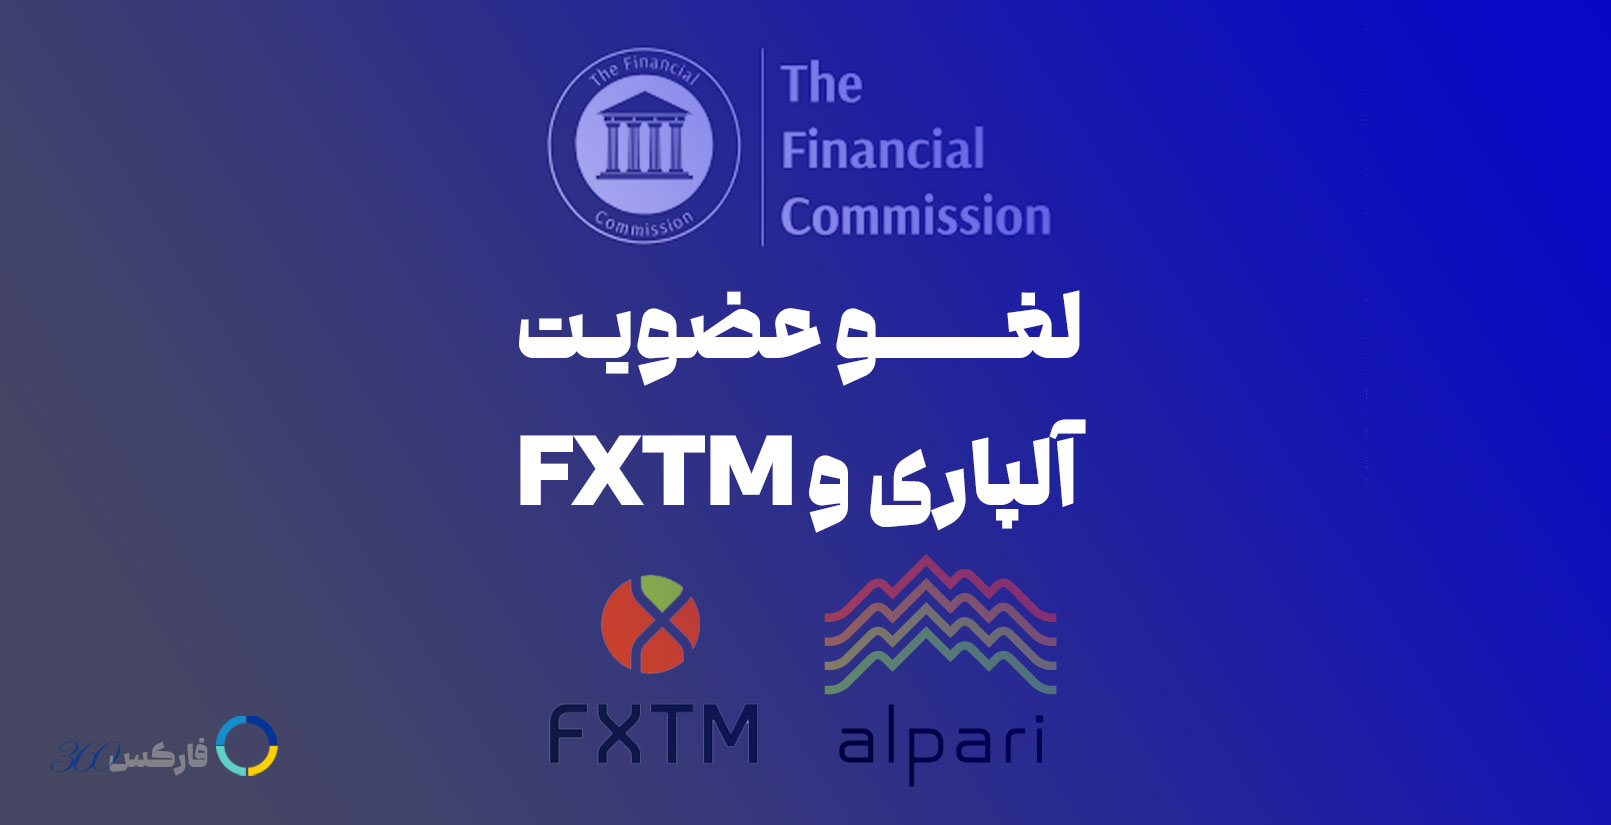 لغو عضویت آلپاری و FXTM در کمیسیون مالی FinaCom